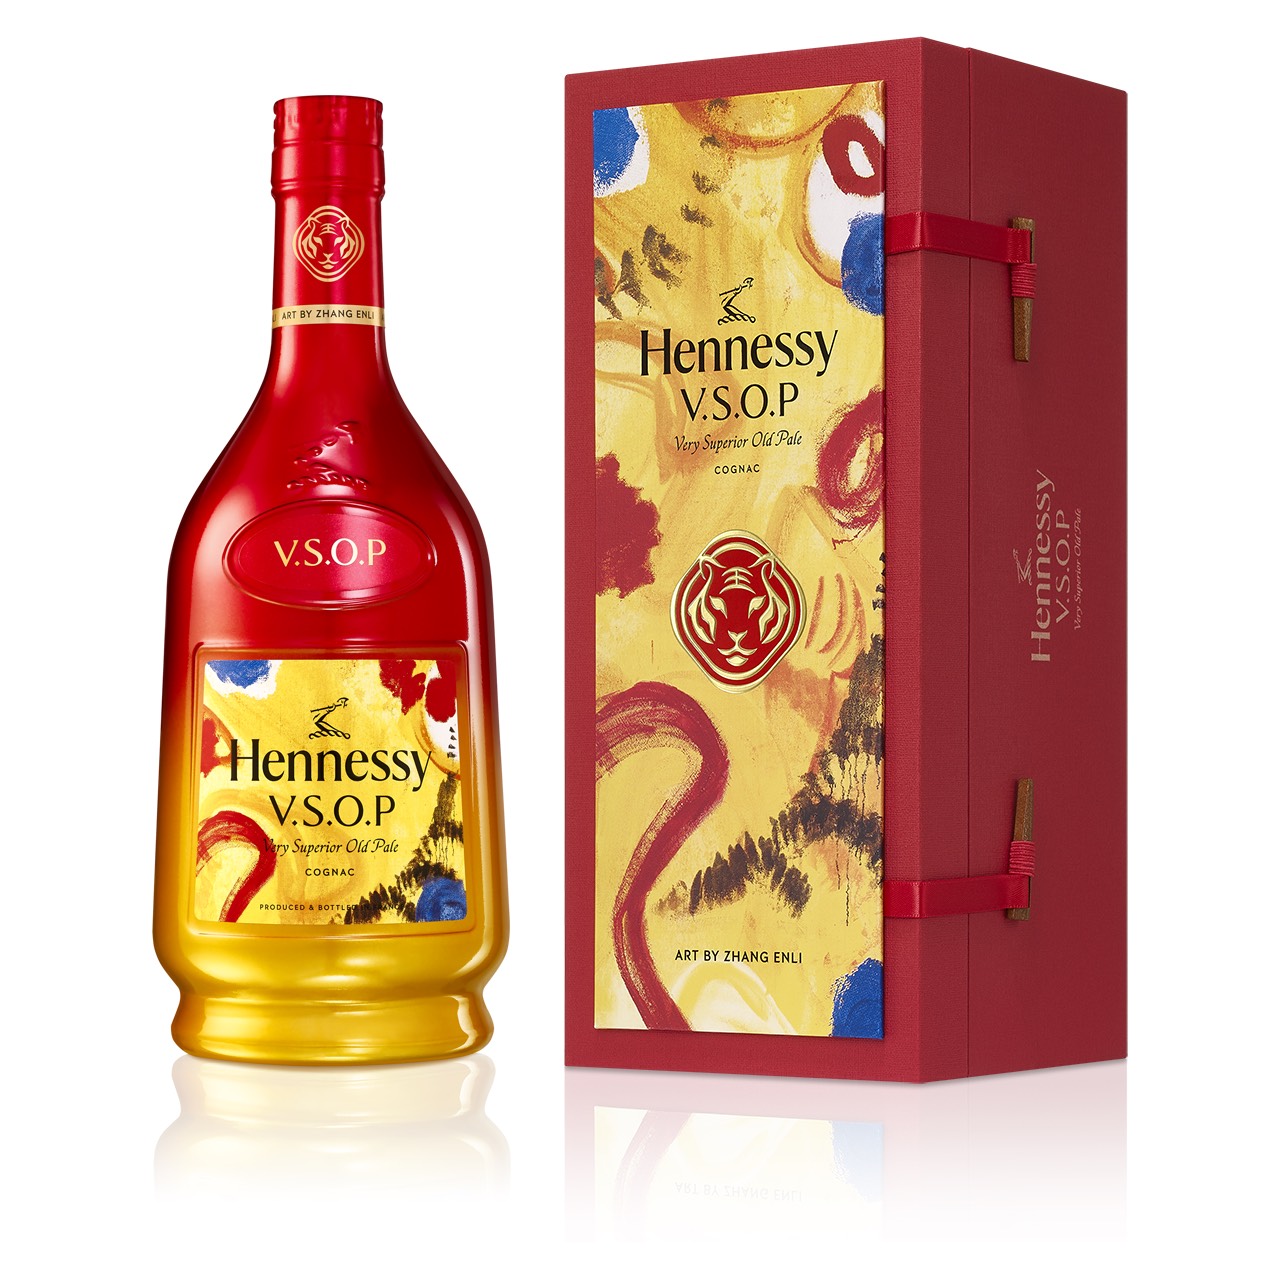 Rượu Cognac Hennessy Vsop Very Superior Old Pale - chai rượu đại diện cho sự mạnh mẽ